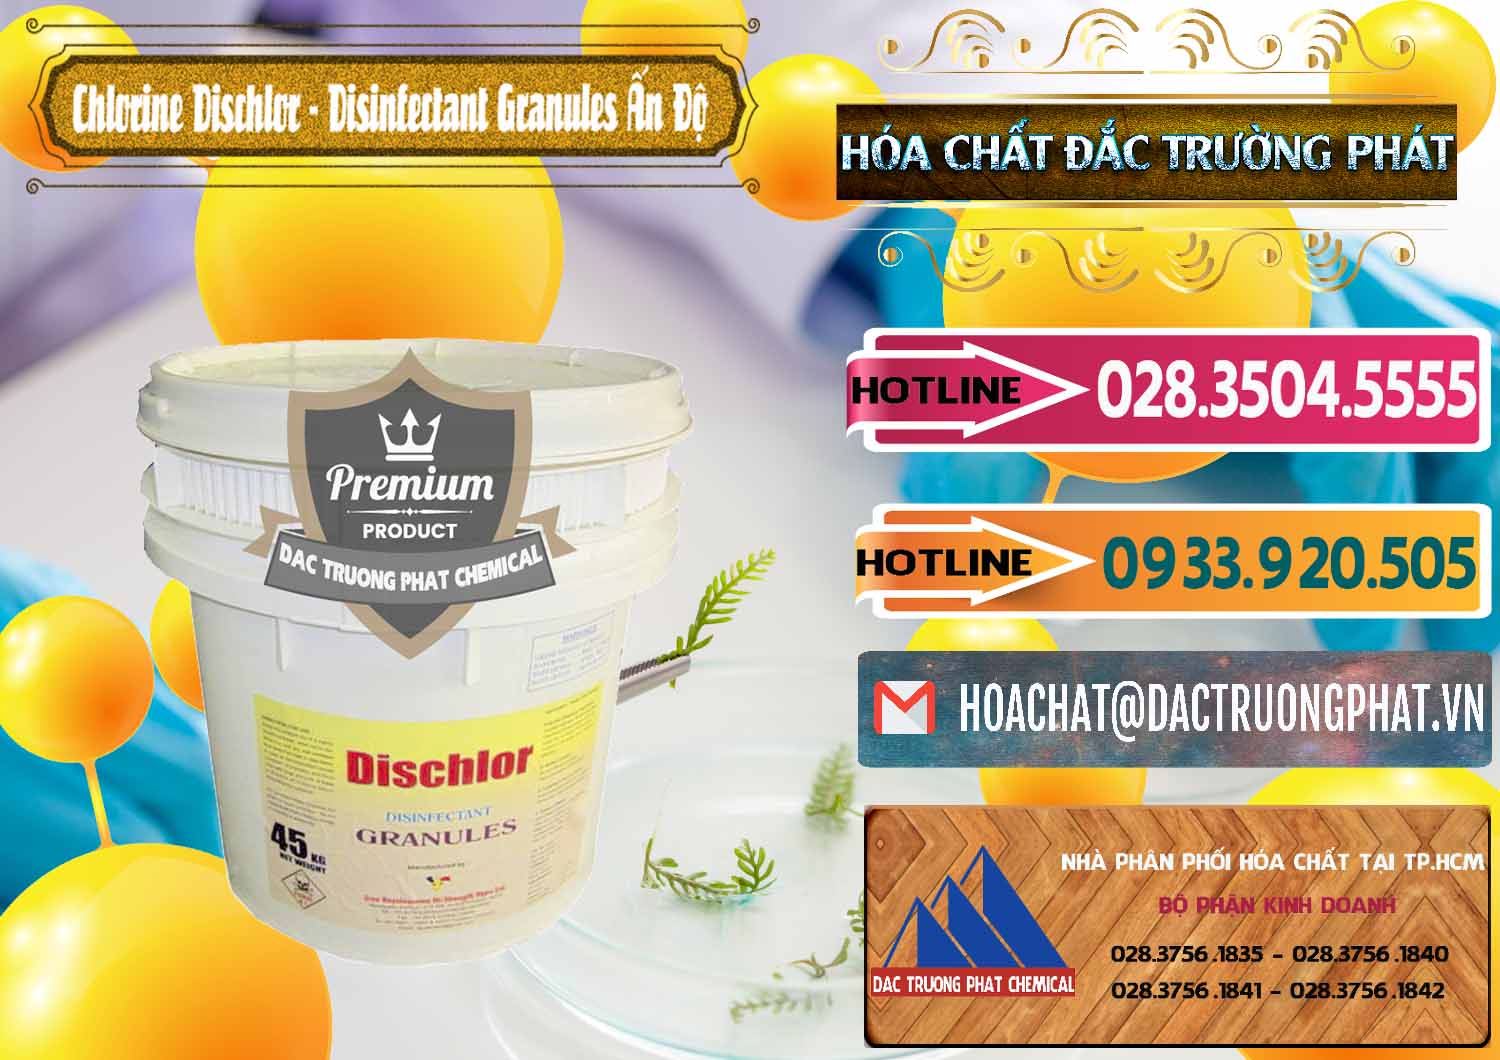 Chuyên kinh doanh & bán Chlorine – Clorin 70% Dischlor - Disinfectant Granules Ấn Độ India - 0248 - Nơi phân phối _ nhập khẩu hóa chất tại TP.HCM - dactruongphat.vn